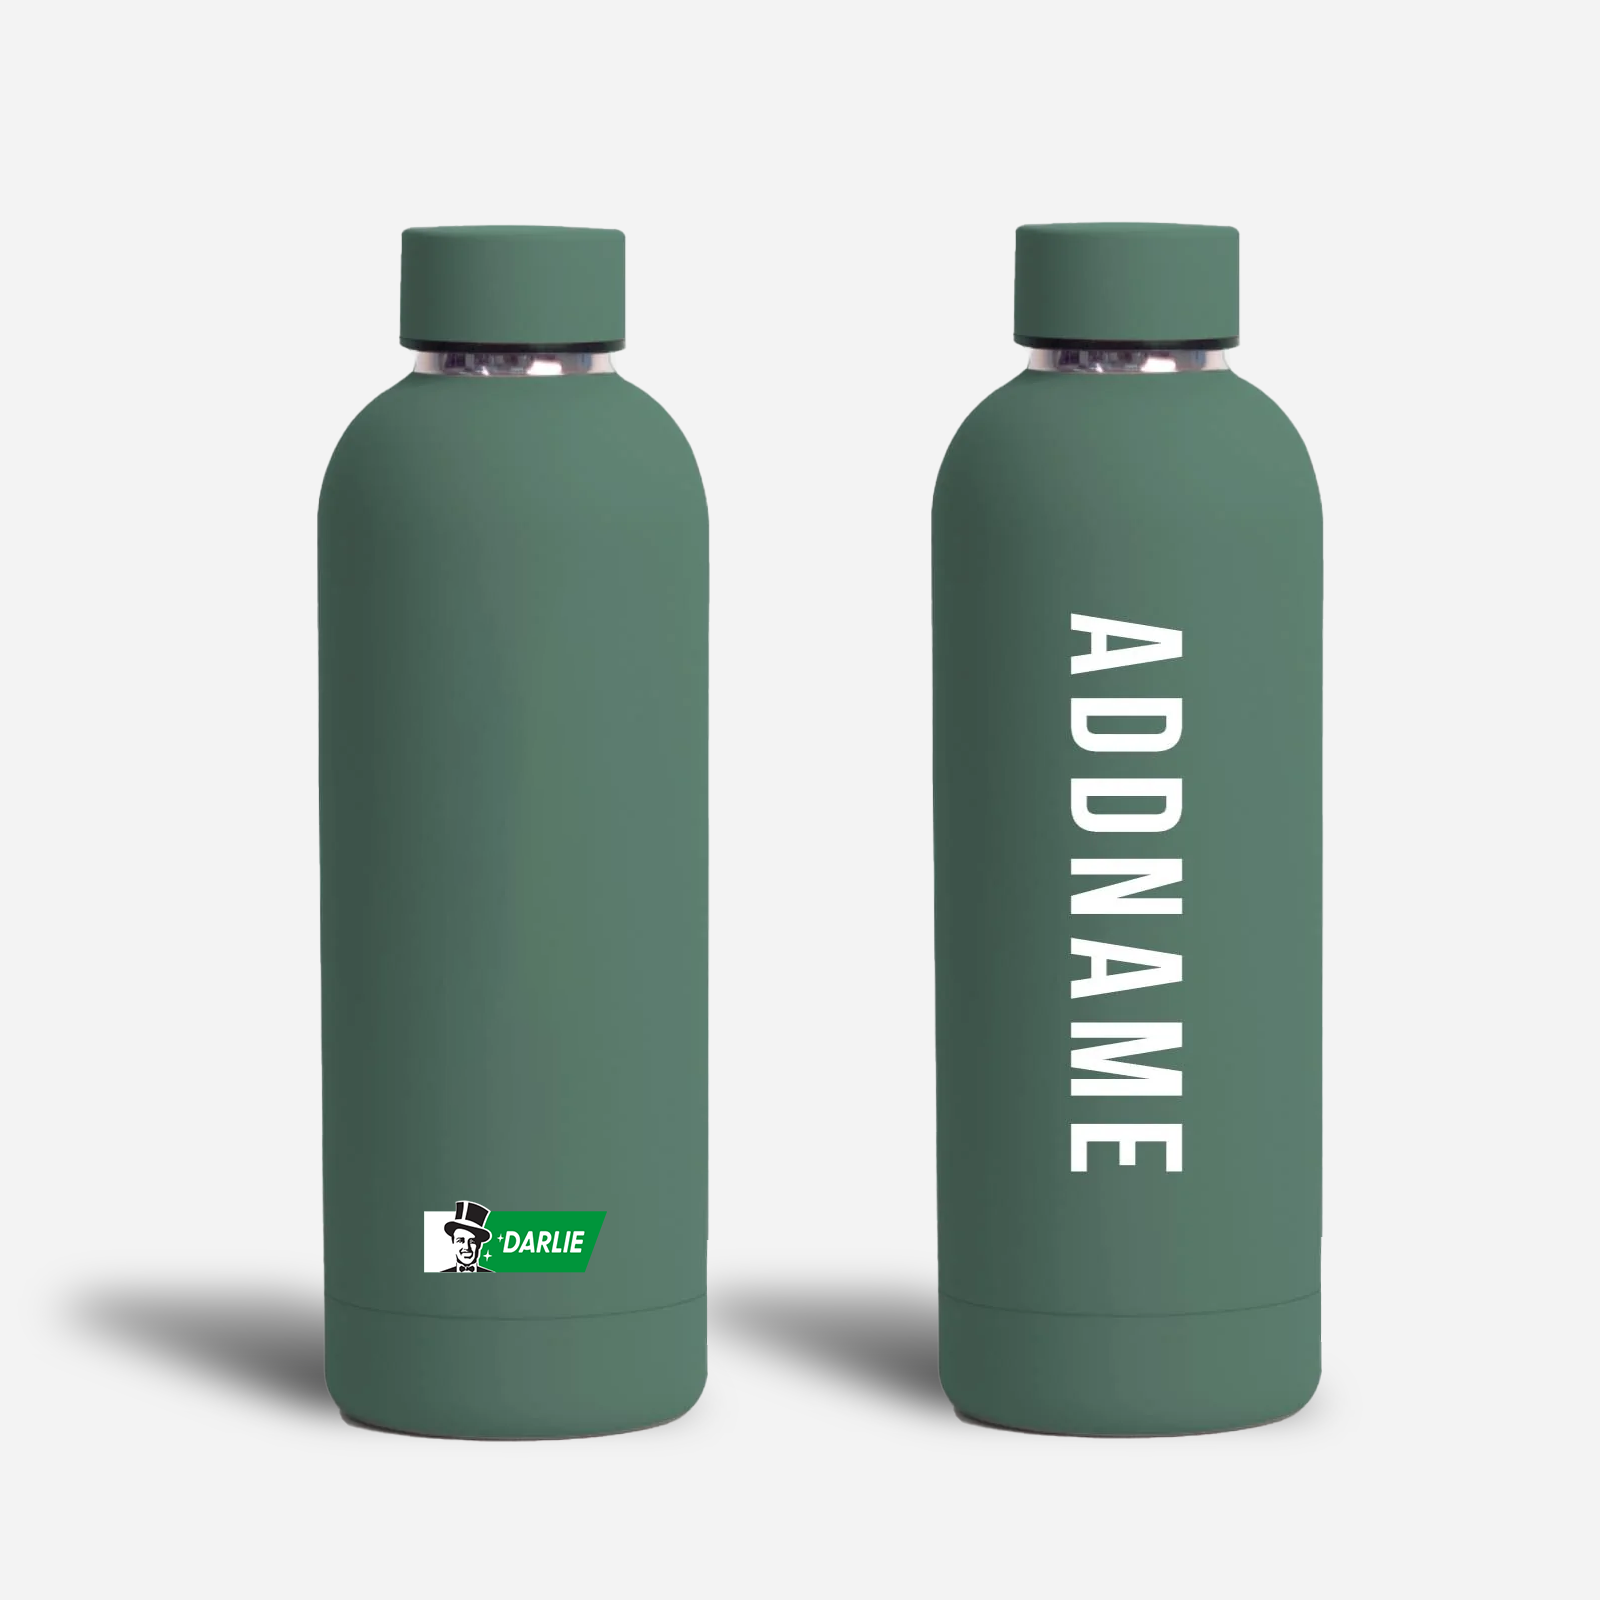 Darlie Personalised Mizu Bottle Redemption - Green